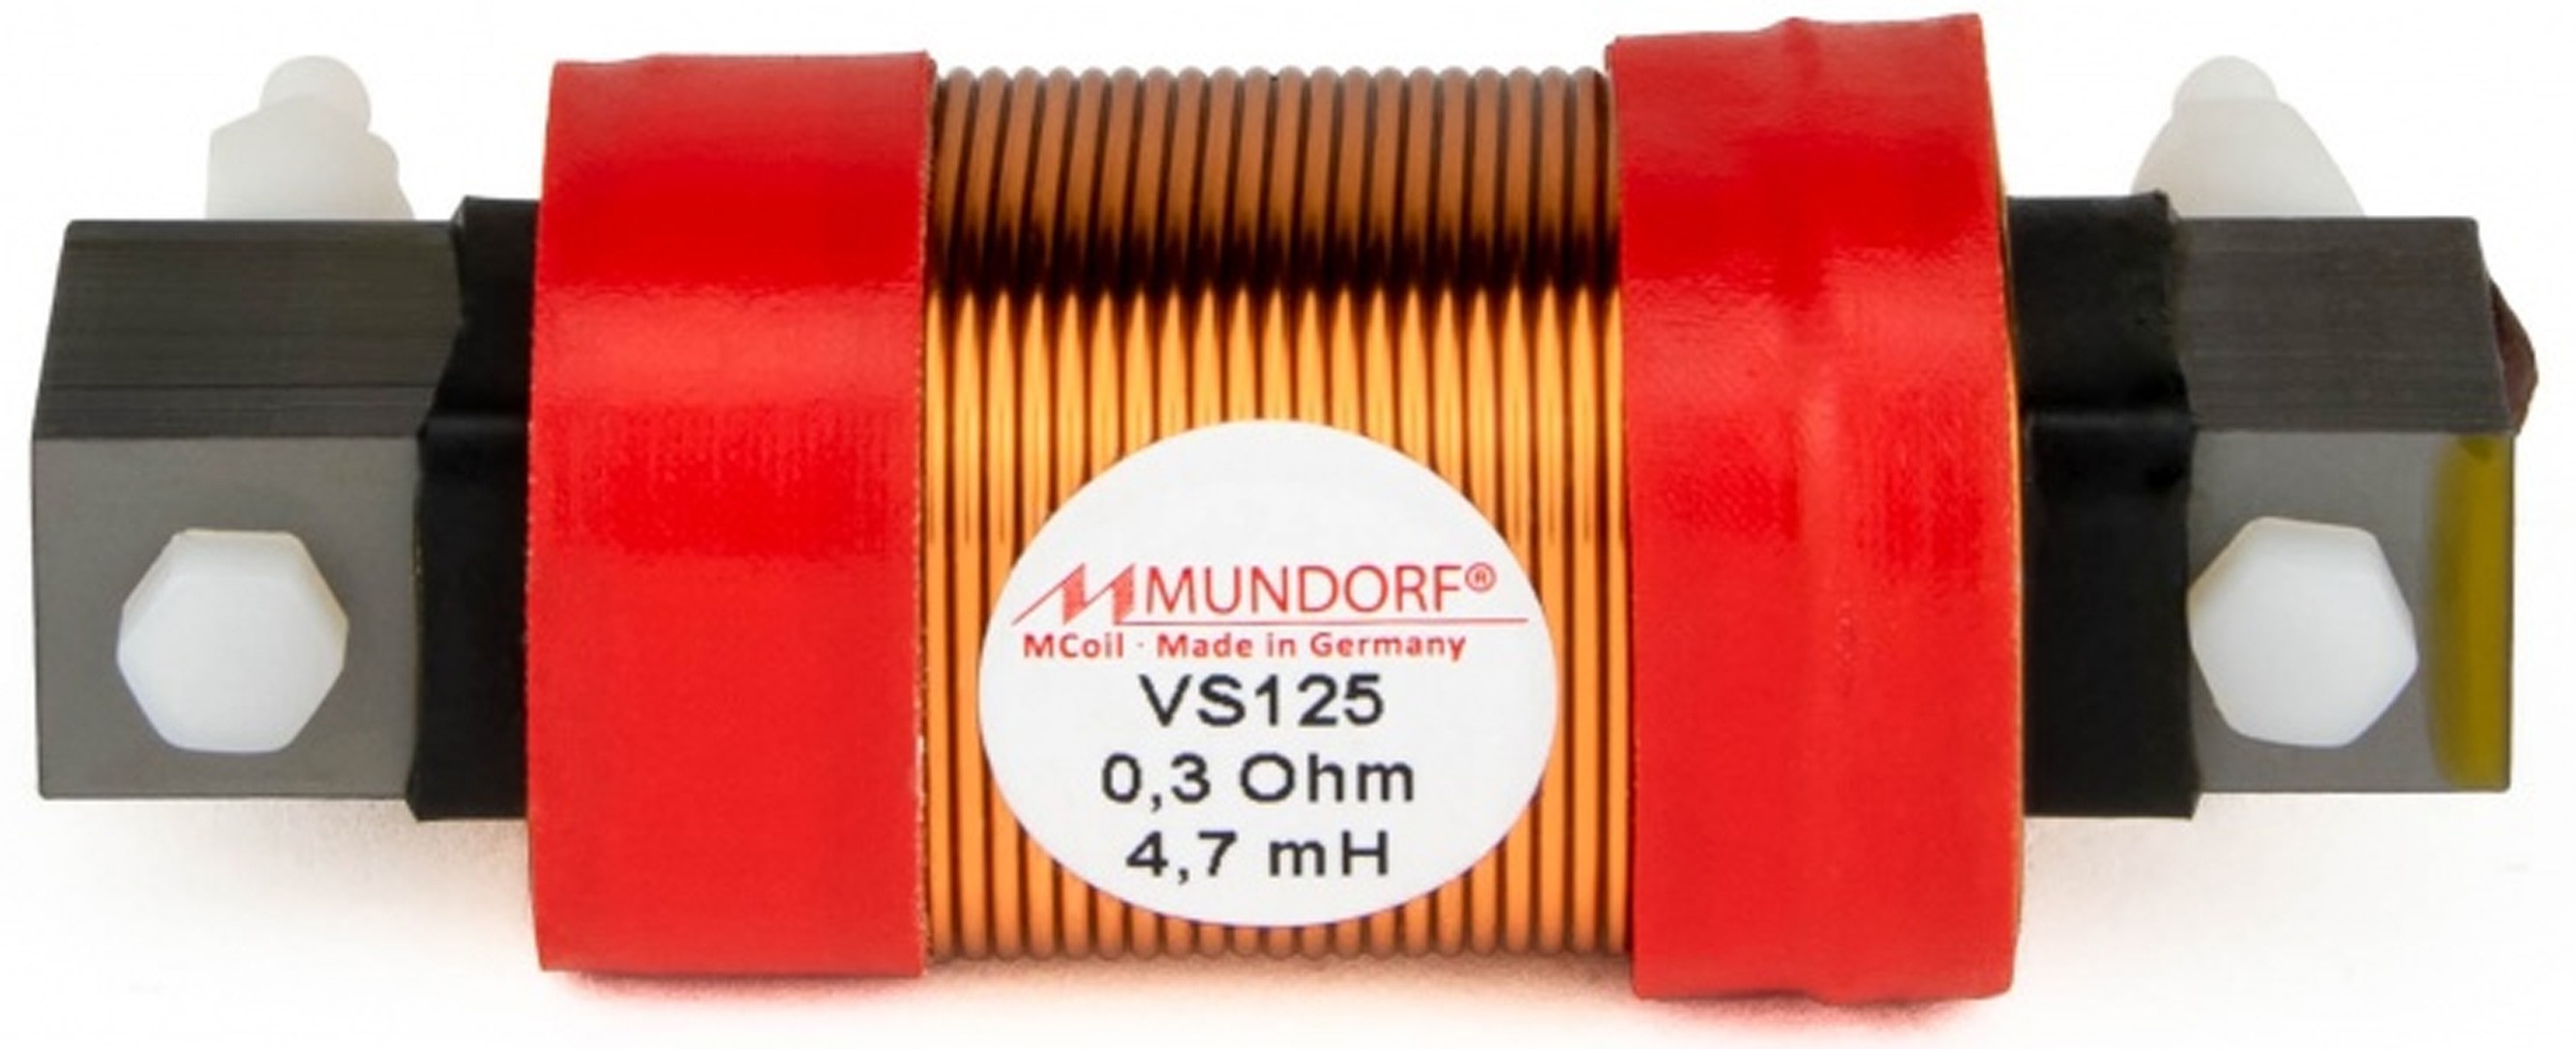 MUNDORF VS125-4.7 MCOIL ICORE Copper Coil Feron Core 4.7mH